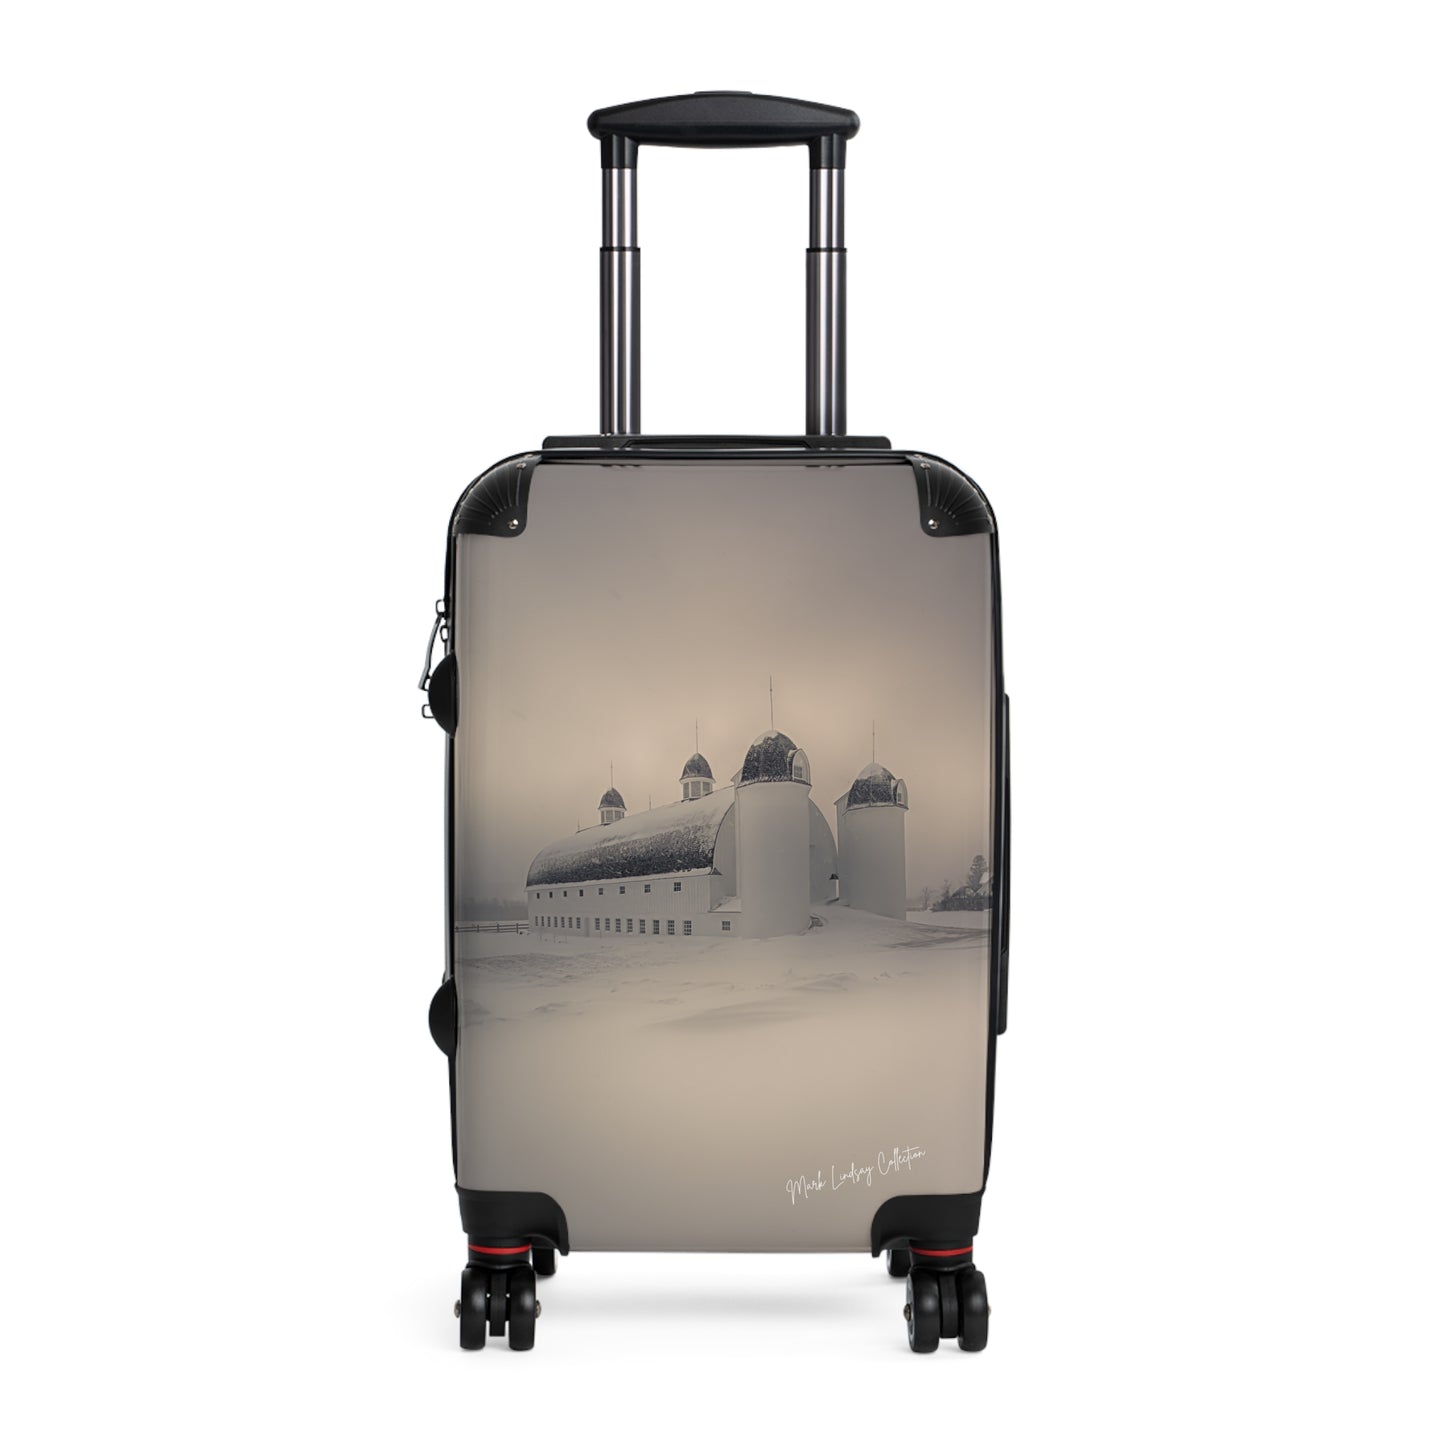 Leelanau's Grace and Elegance Art Luggage